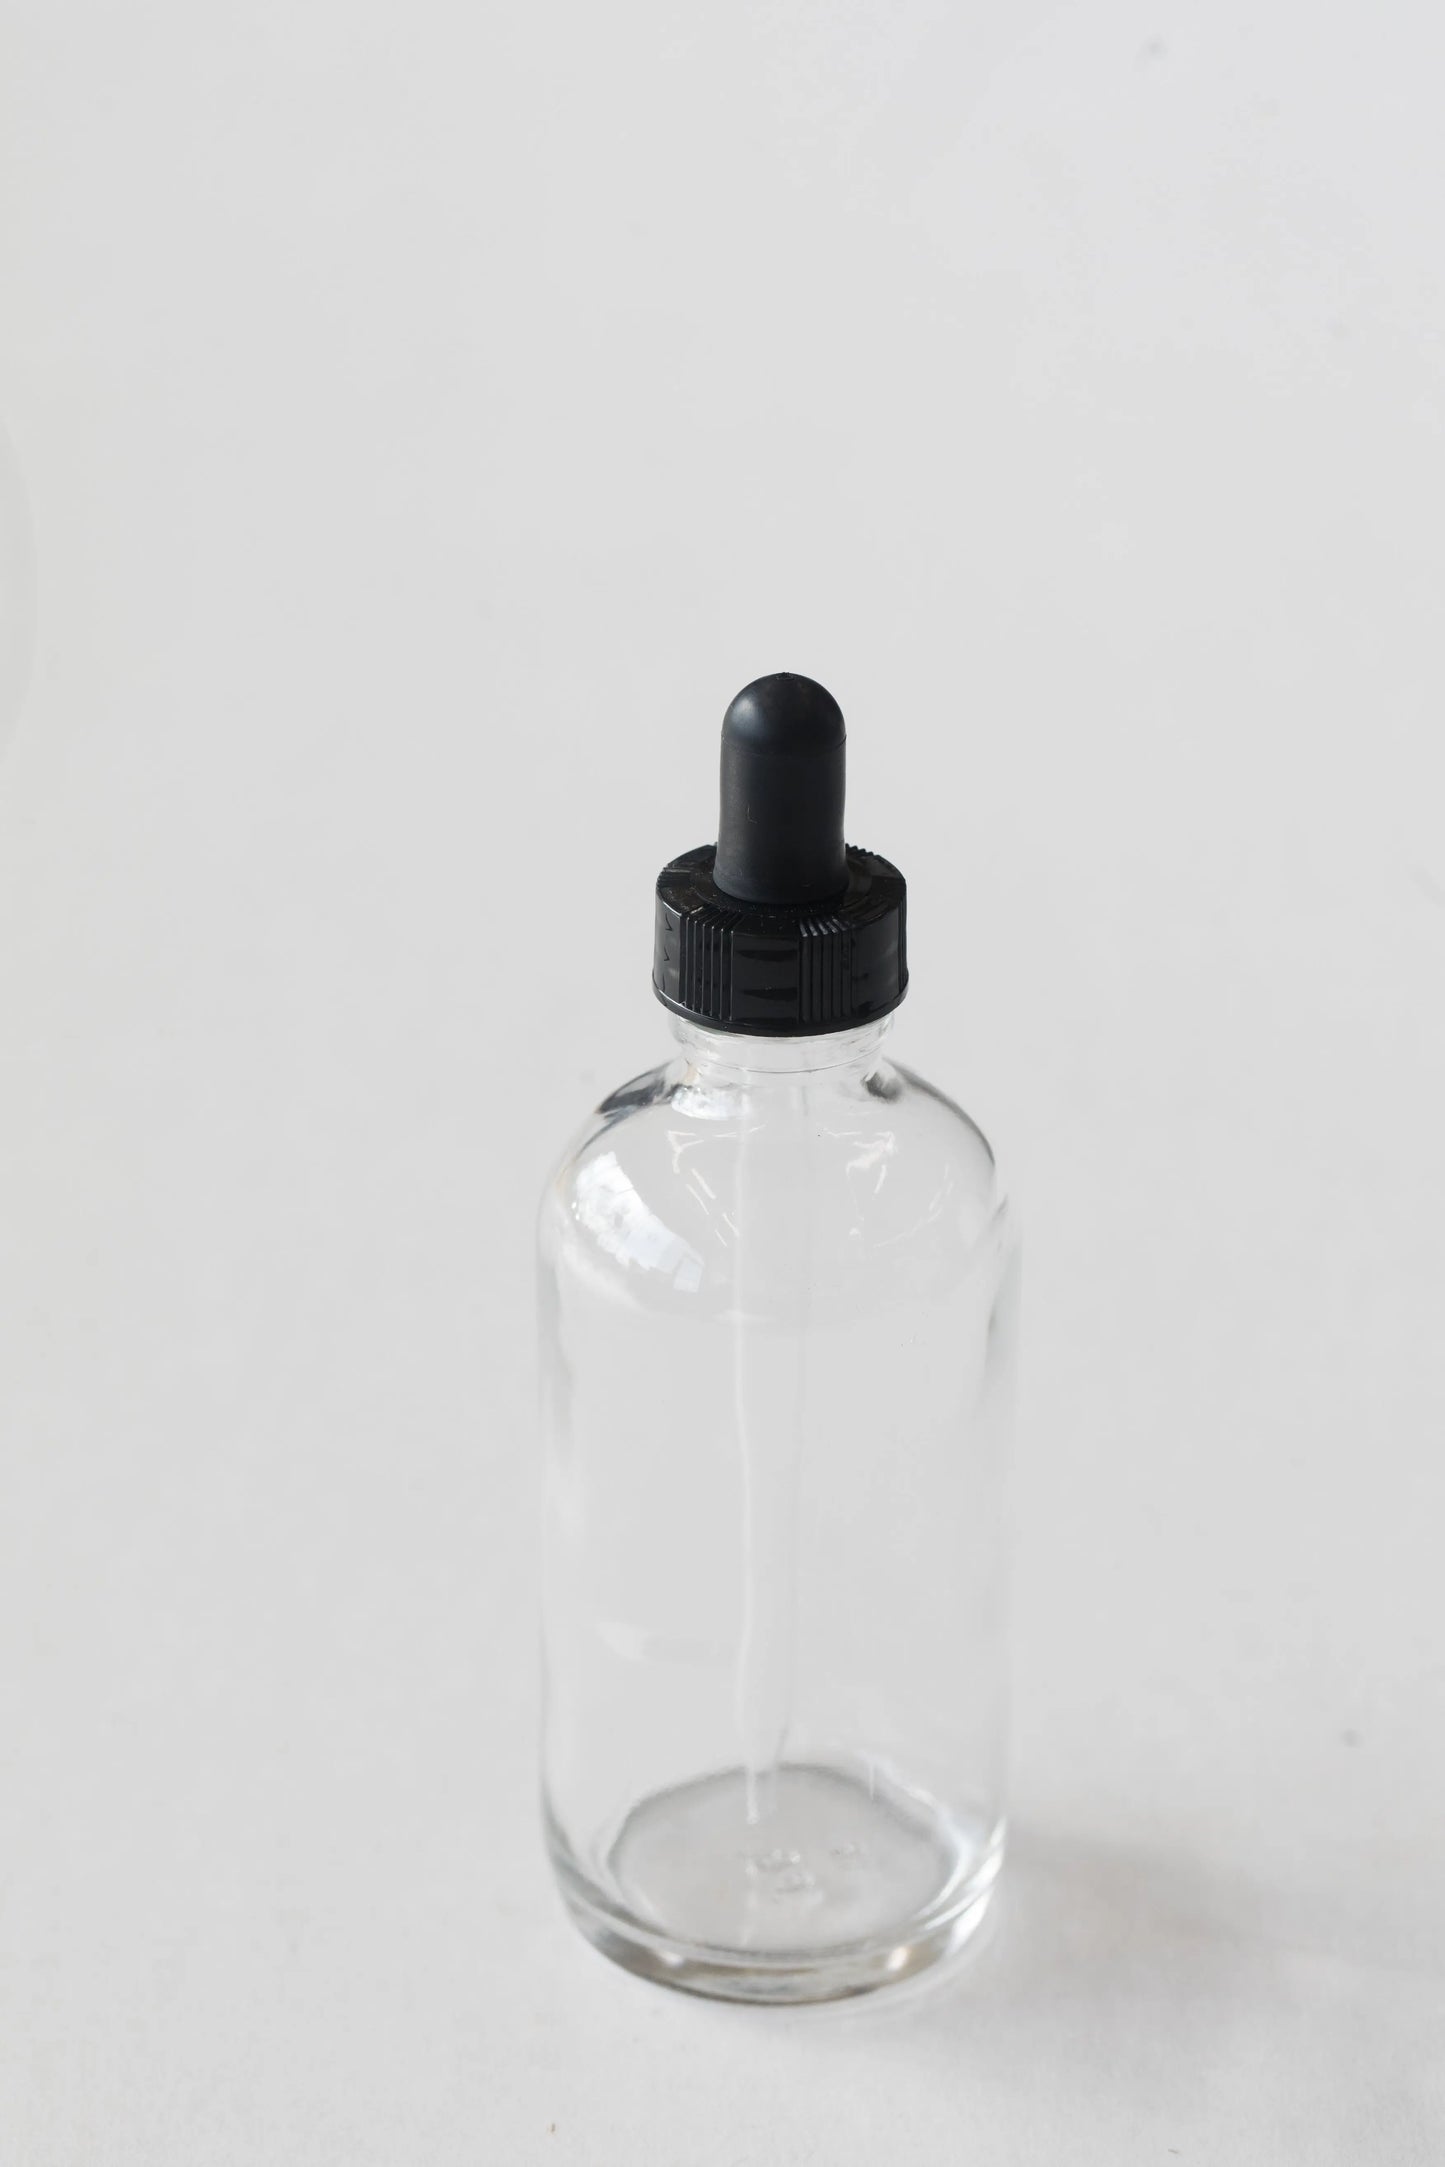 Glass Dropper Bottle - Clear - Stemcell Science Shop